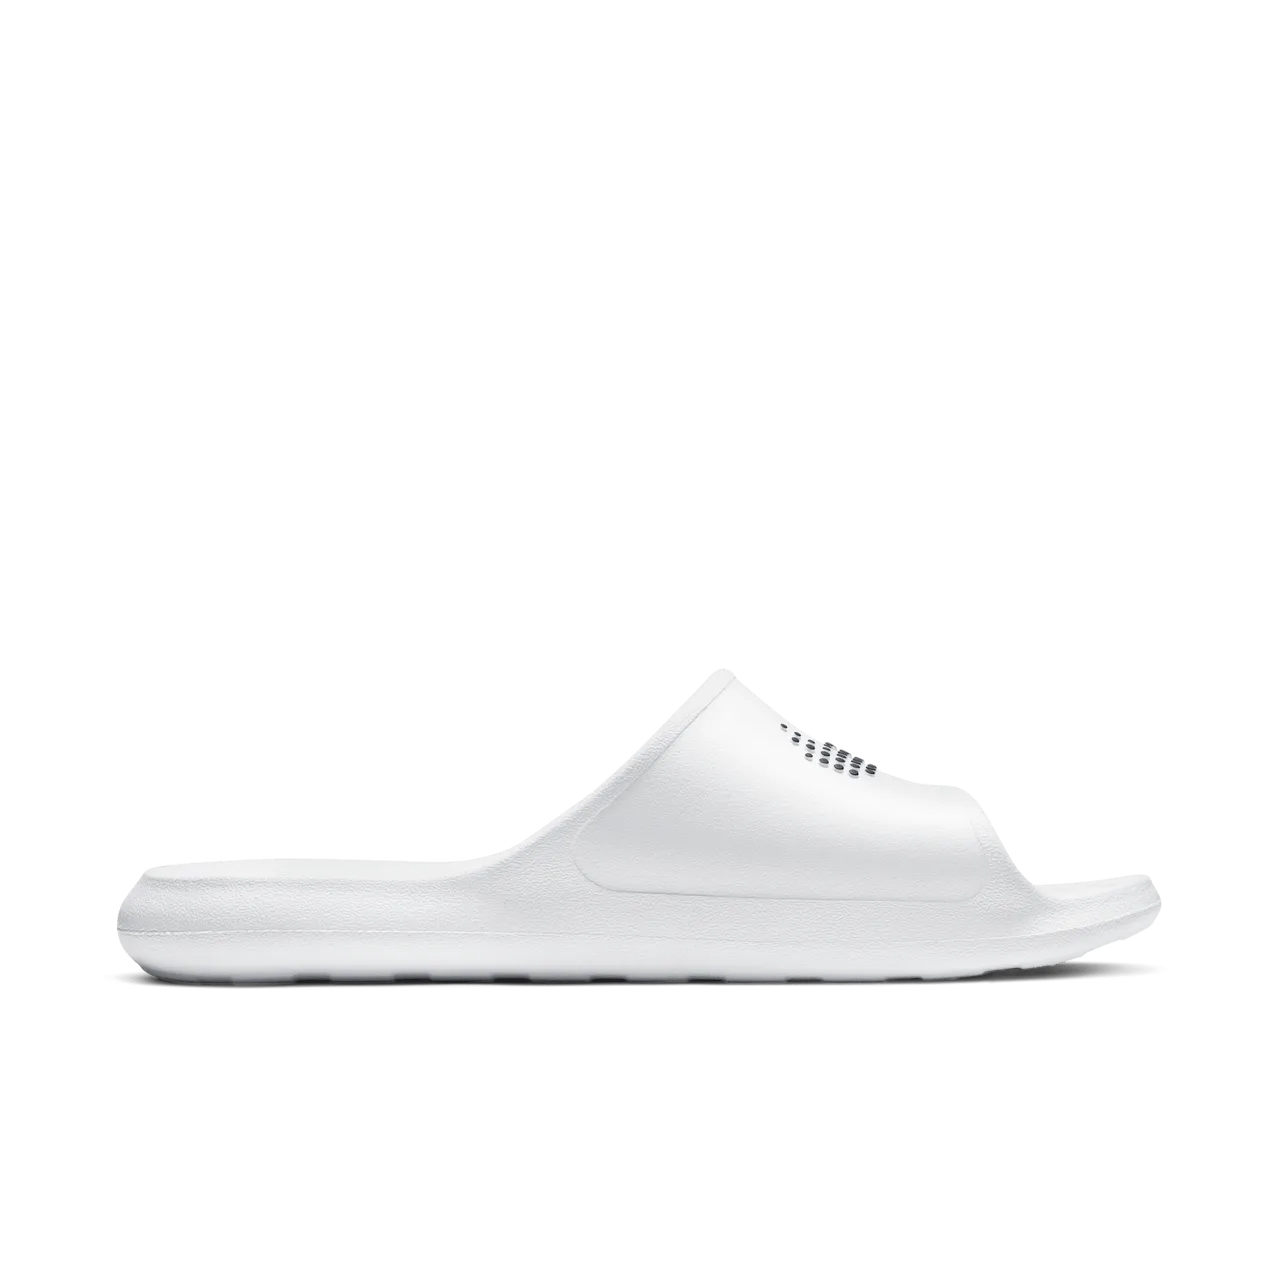 Nike Victori One Men's Shower Slides - White